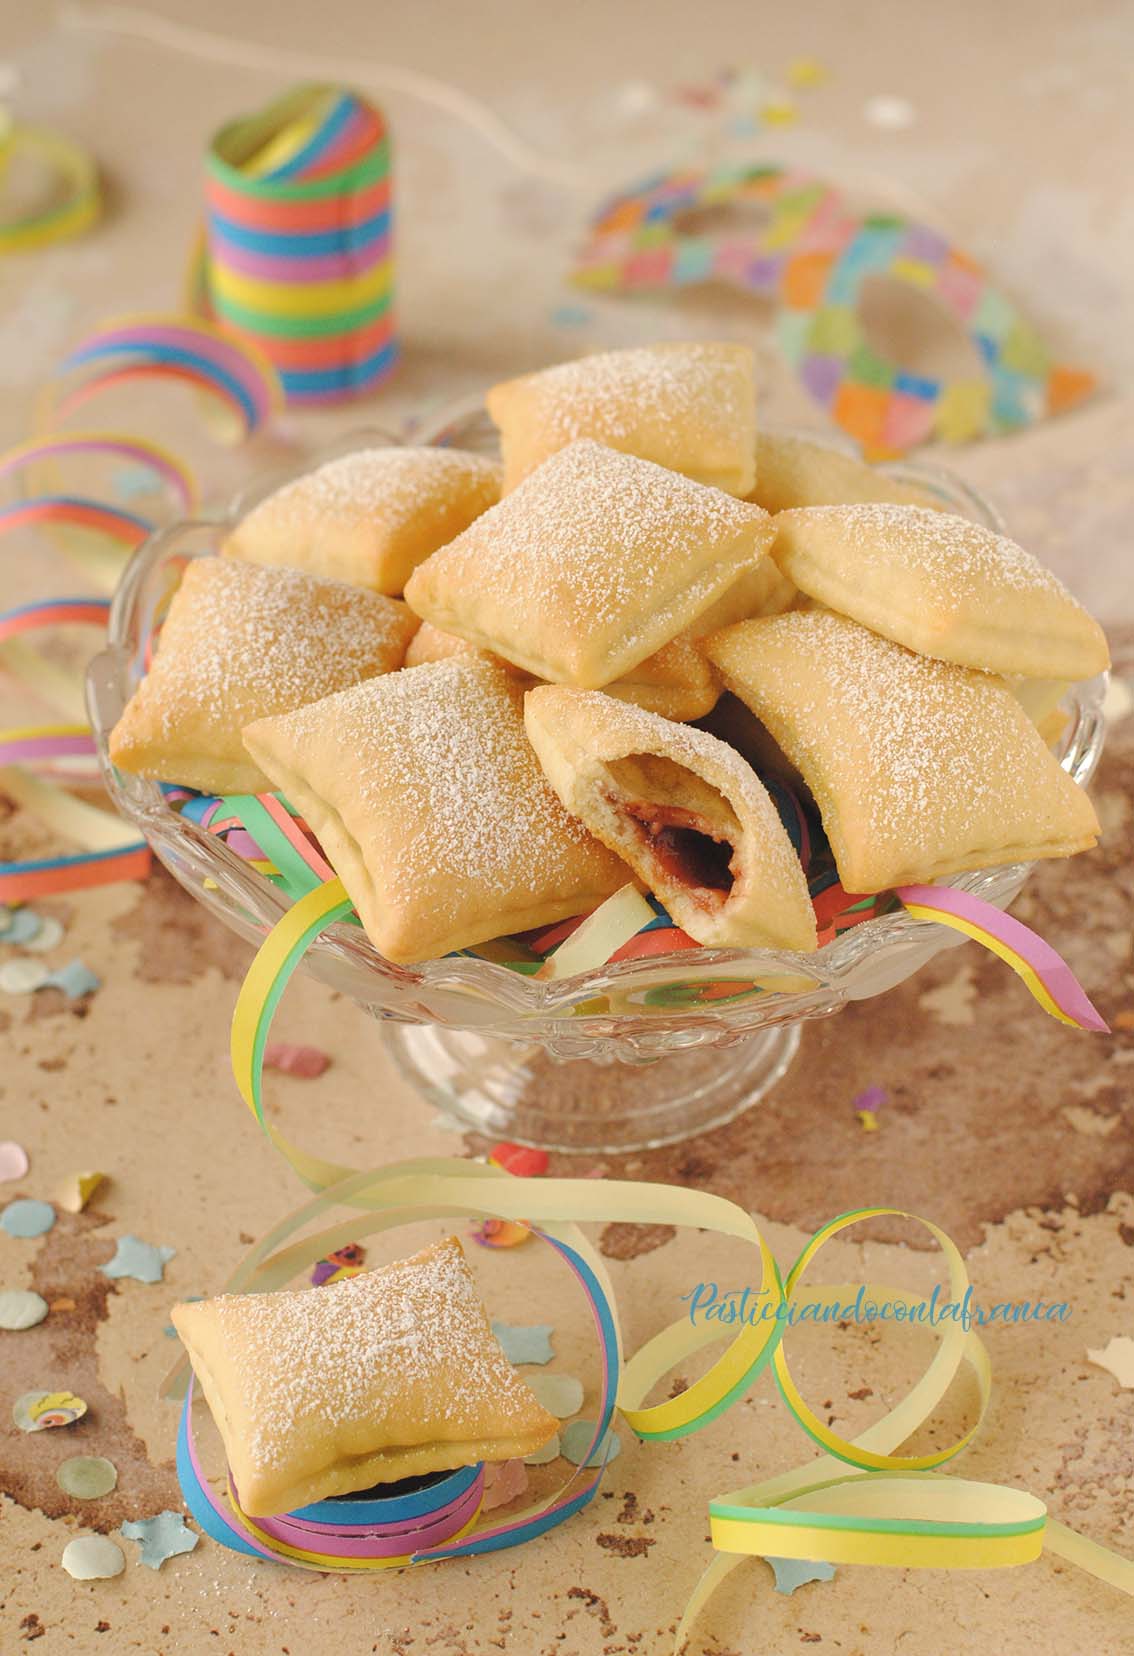 questa immagine rappresenta i ravioli dolci al forno ricetta di pasticciandoconlafranca